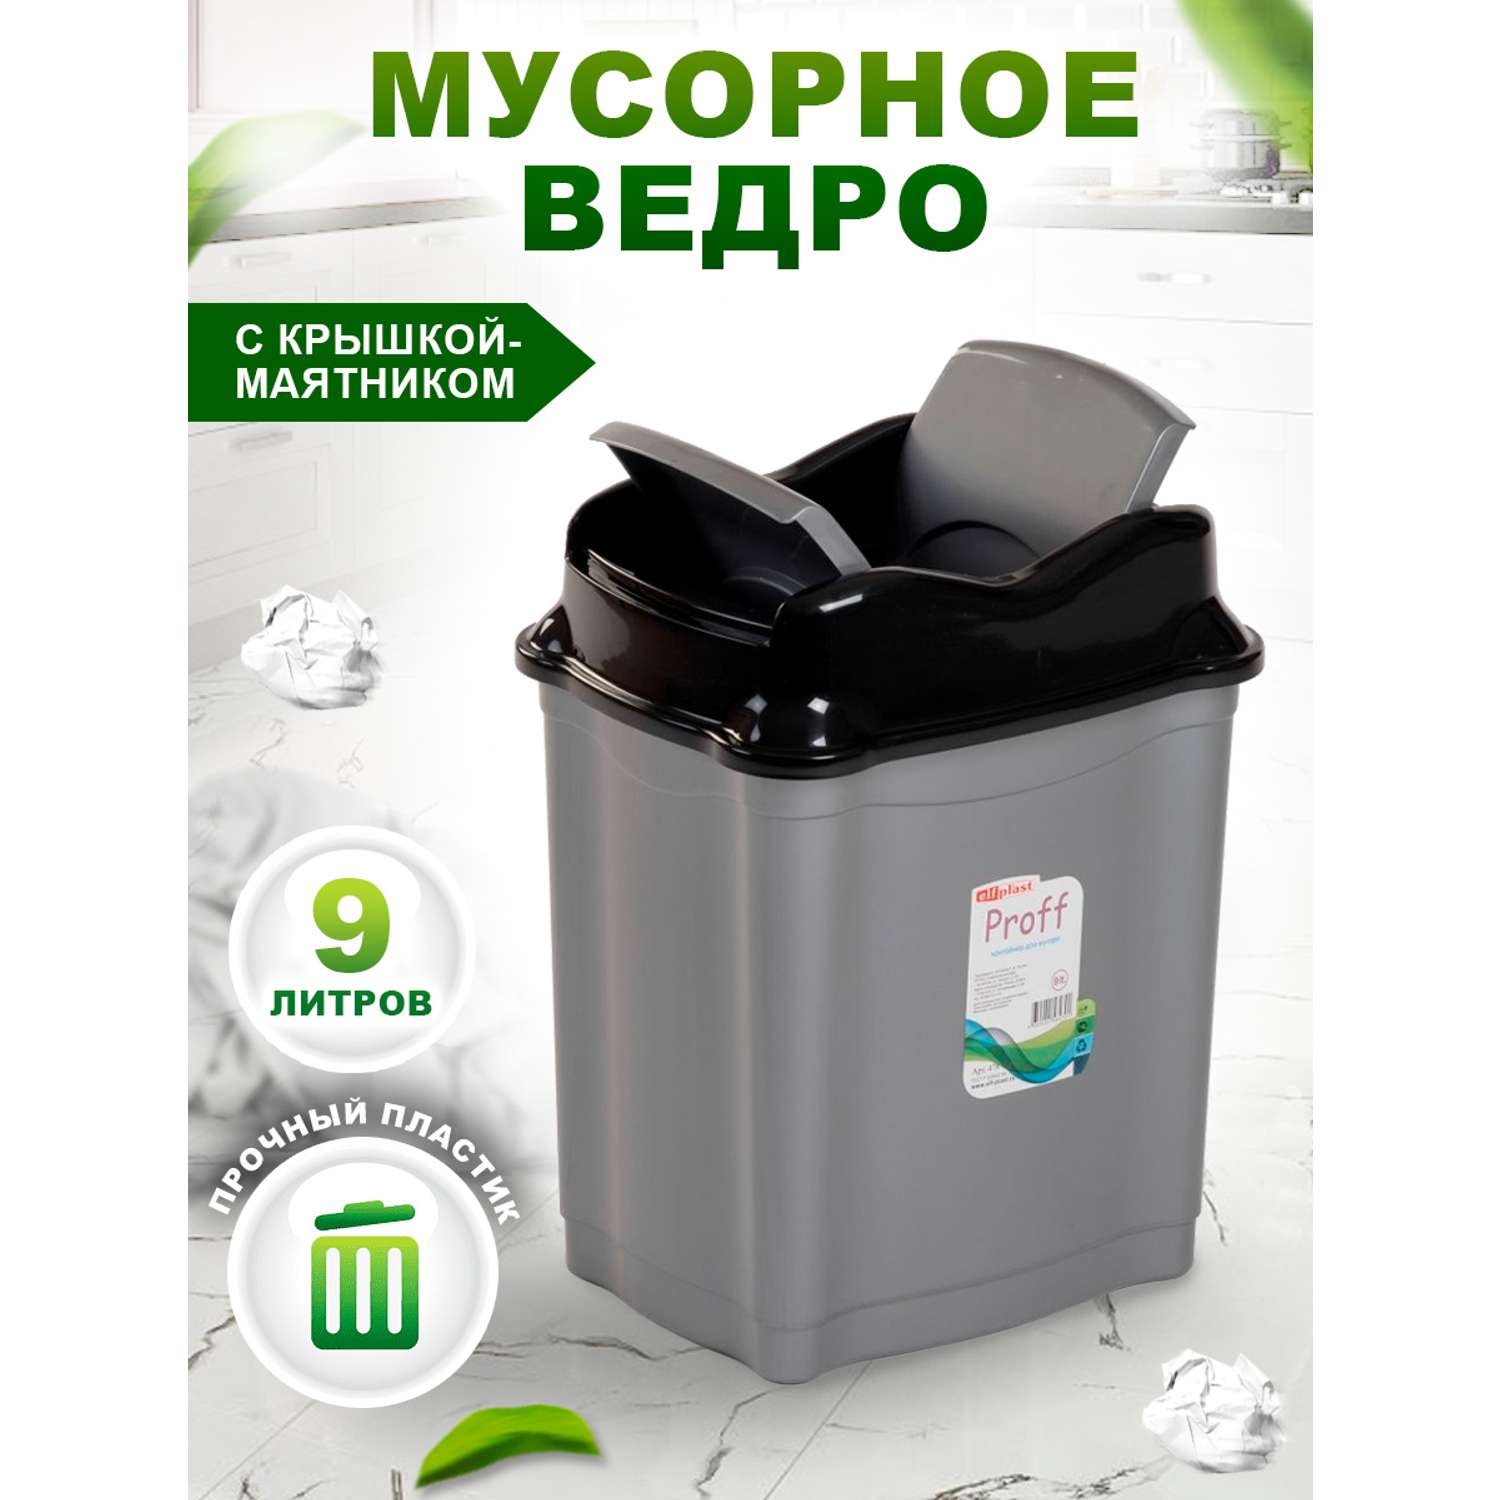 Контейнер elfplast Proff для мусора 9 литров серый черный - фото 1